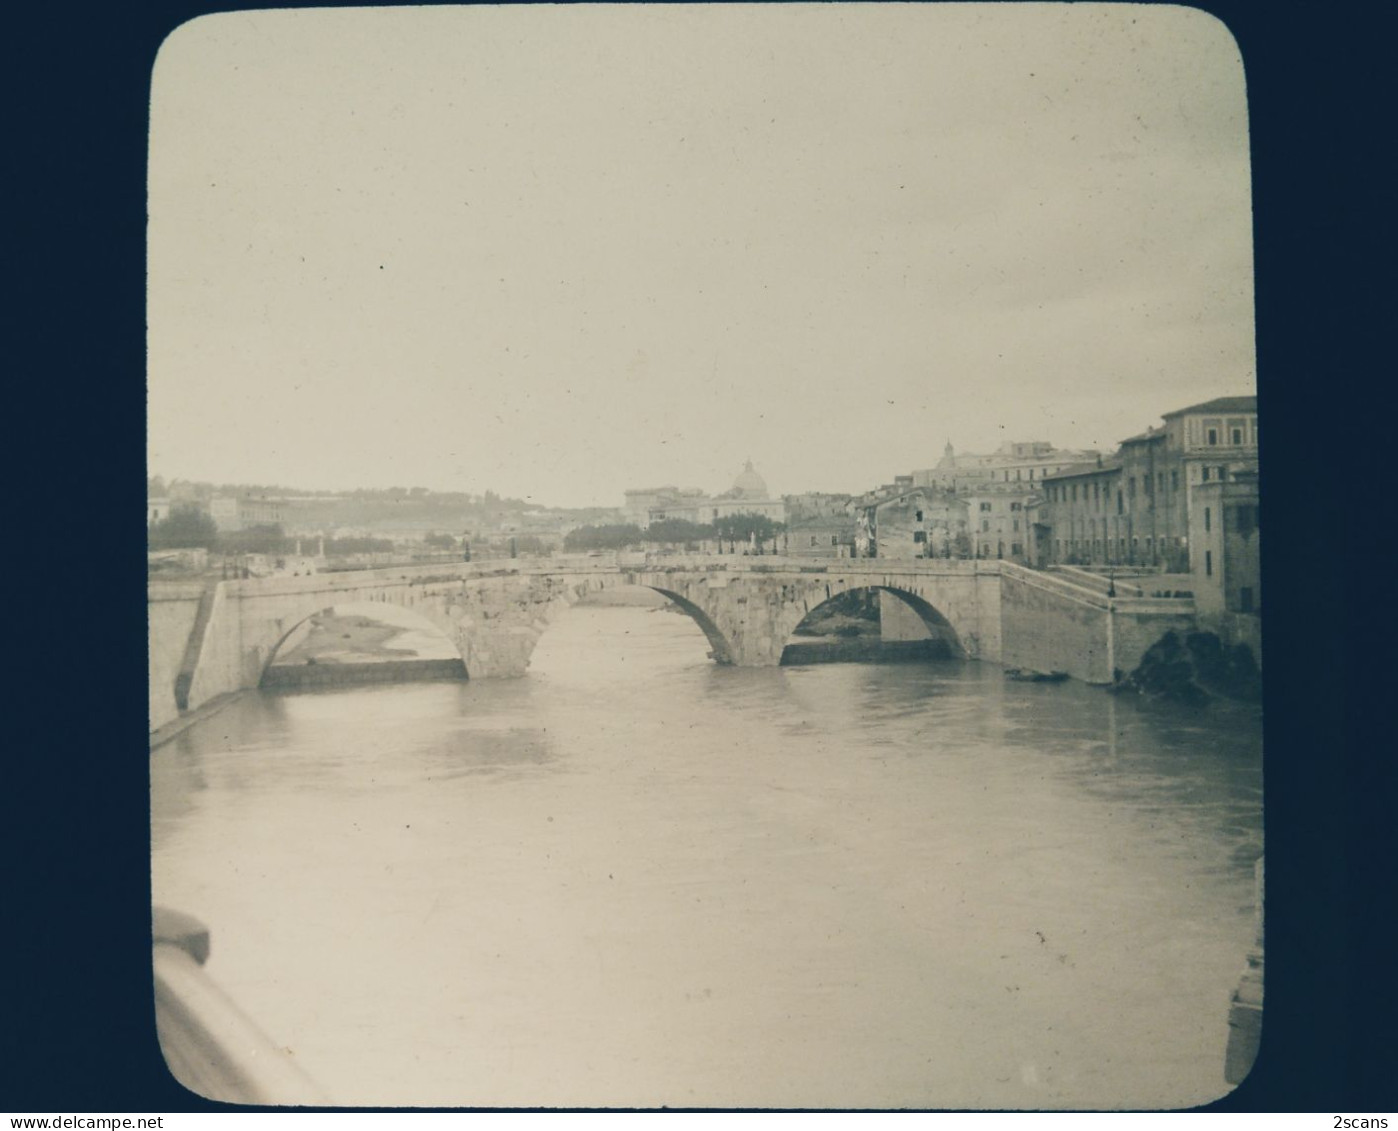 Italie - ROME - ROMA - Plaque De Verre Ancienne (1906) - Le Pont Sisto Sur Le Tibre - Bridges